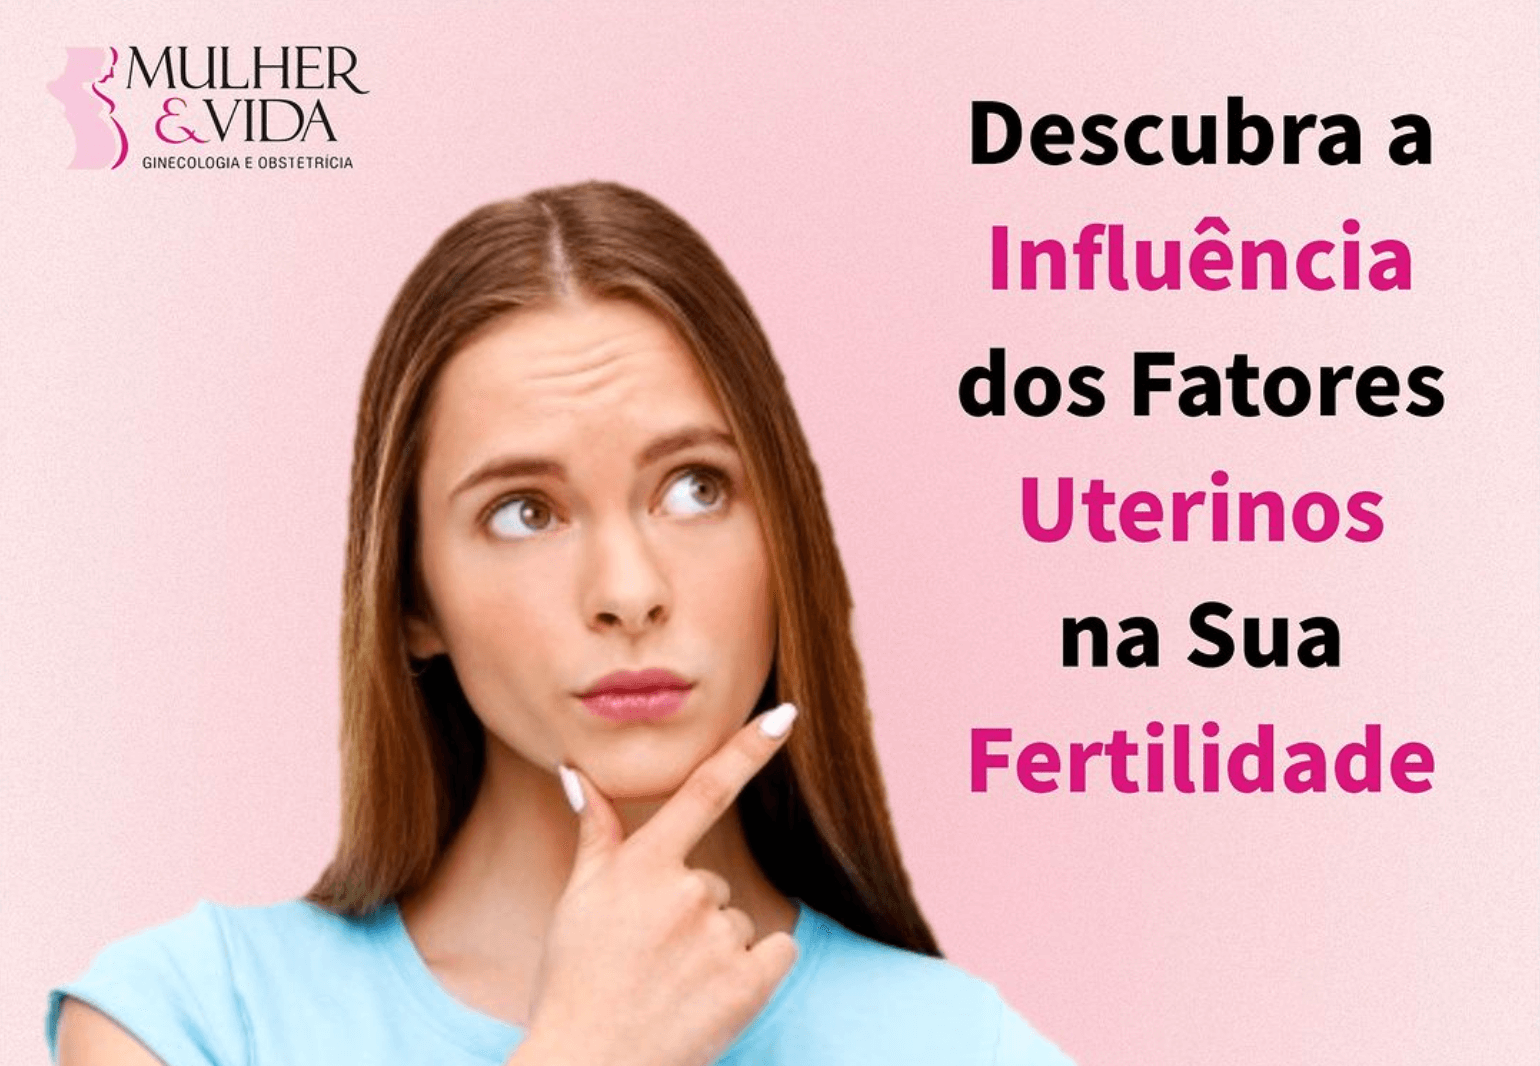 Descubra a influência dos fatores uterinos na sua fertilidade